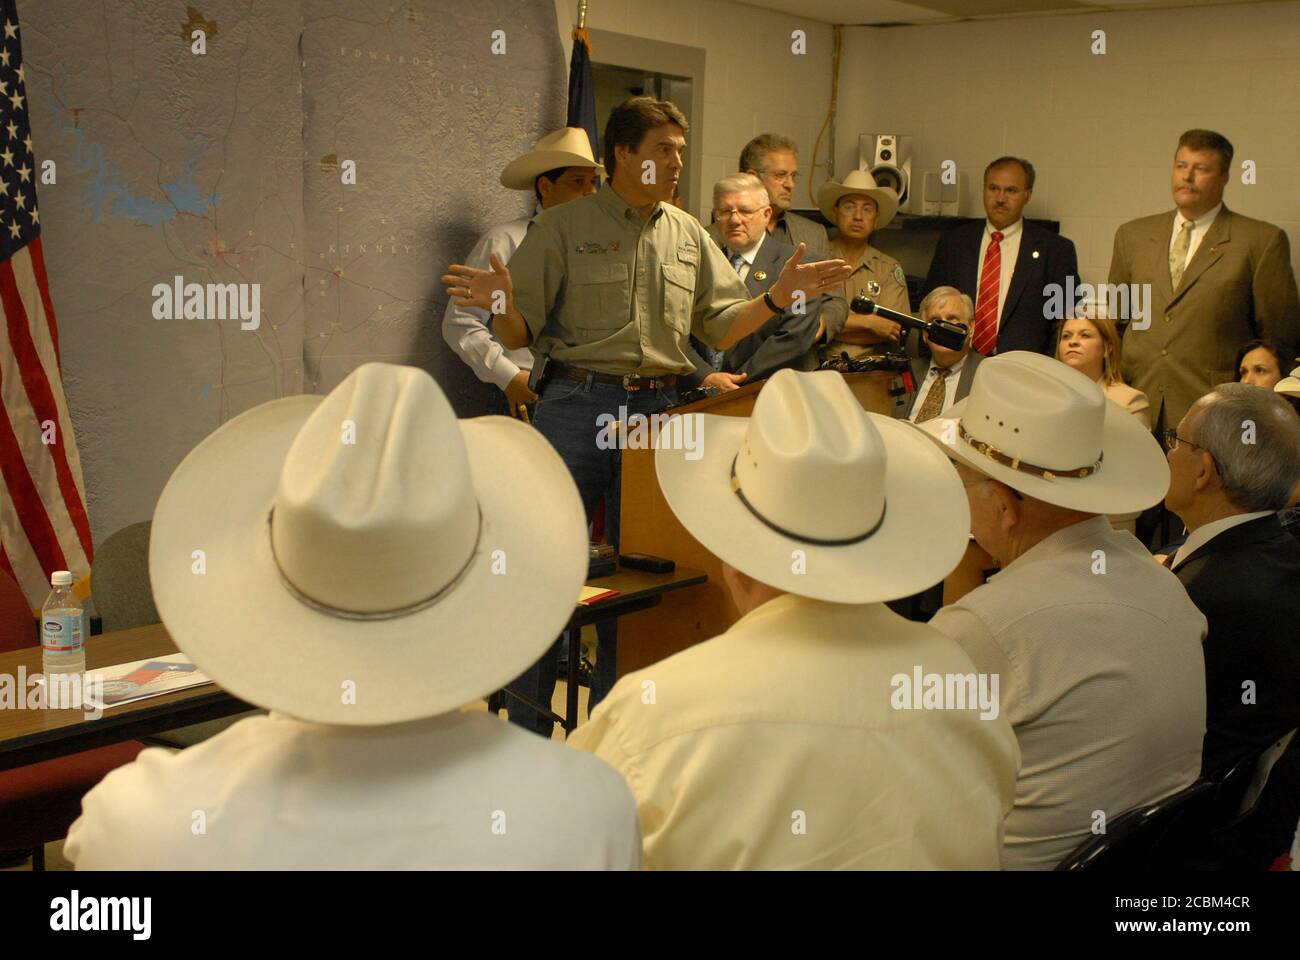 Del Rio, Texas USA, 27 giugno 2006: Il governatore del Texas Rick Perry  parla con i funzionari delle forze dell'ordine, inclusi gli sceriffi delle  contee di confine del Texas (in cappelli), in